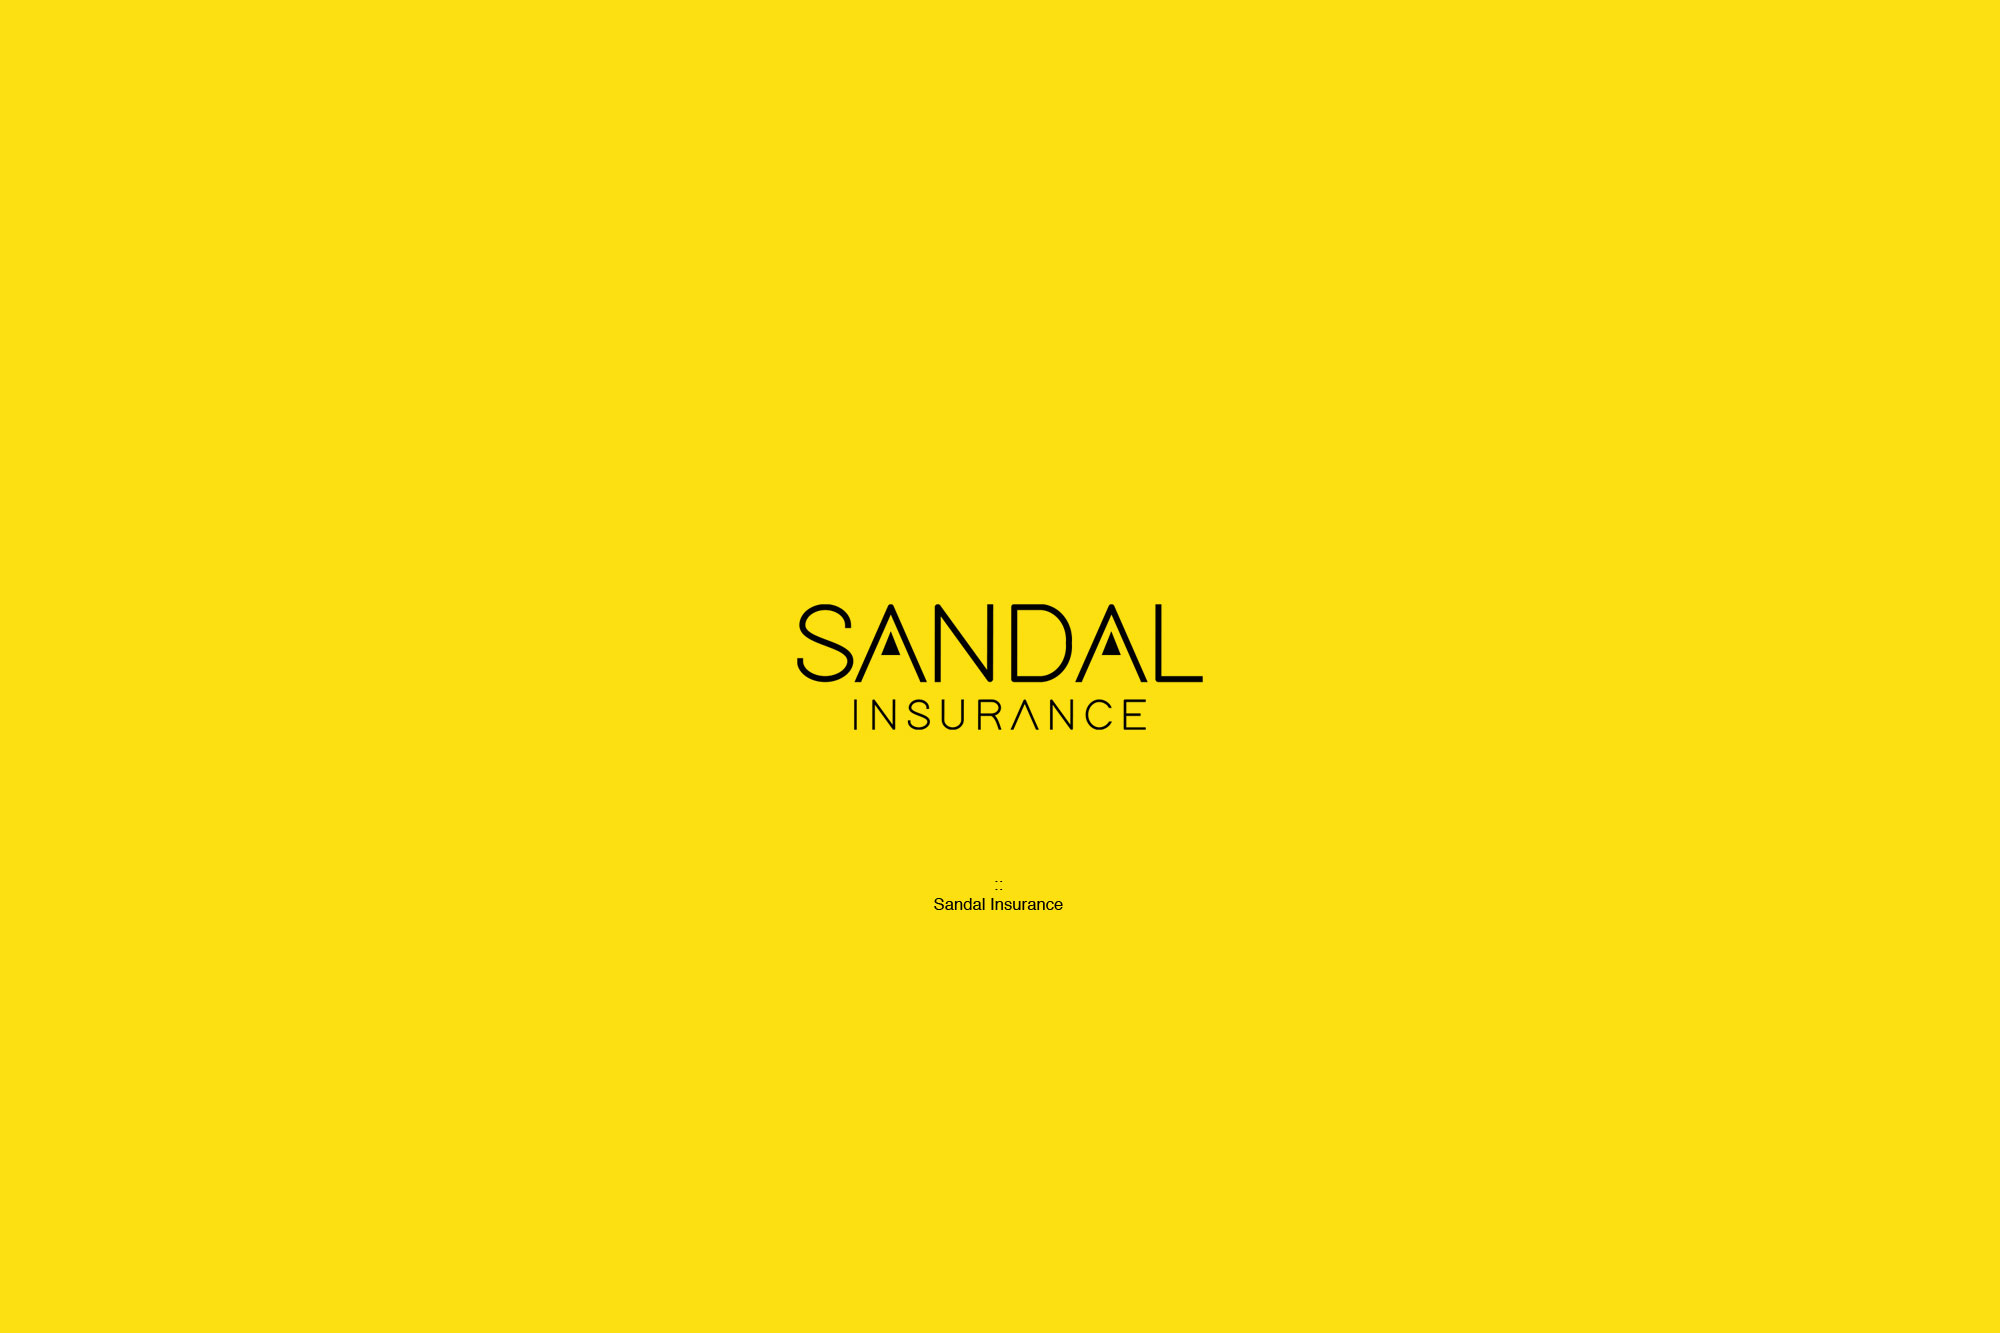 Sandal Insurance